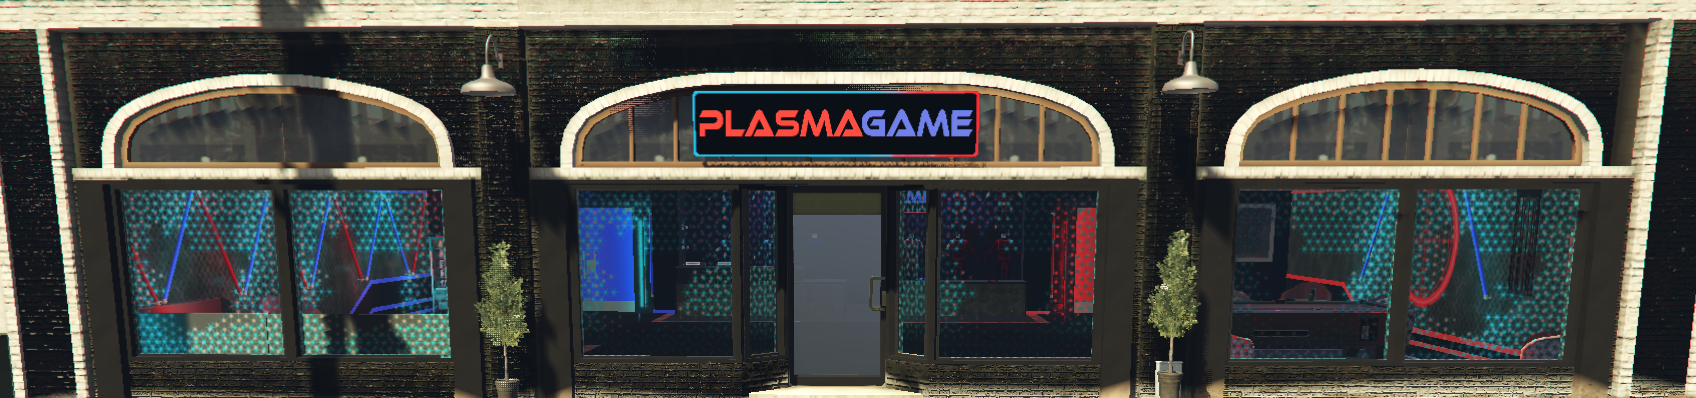 plasma game.png